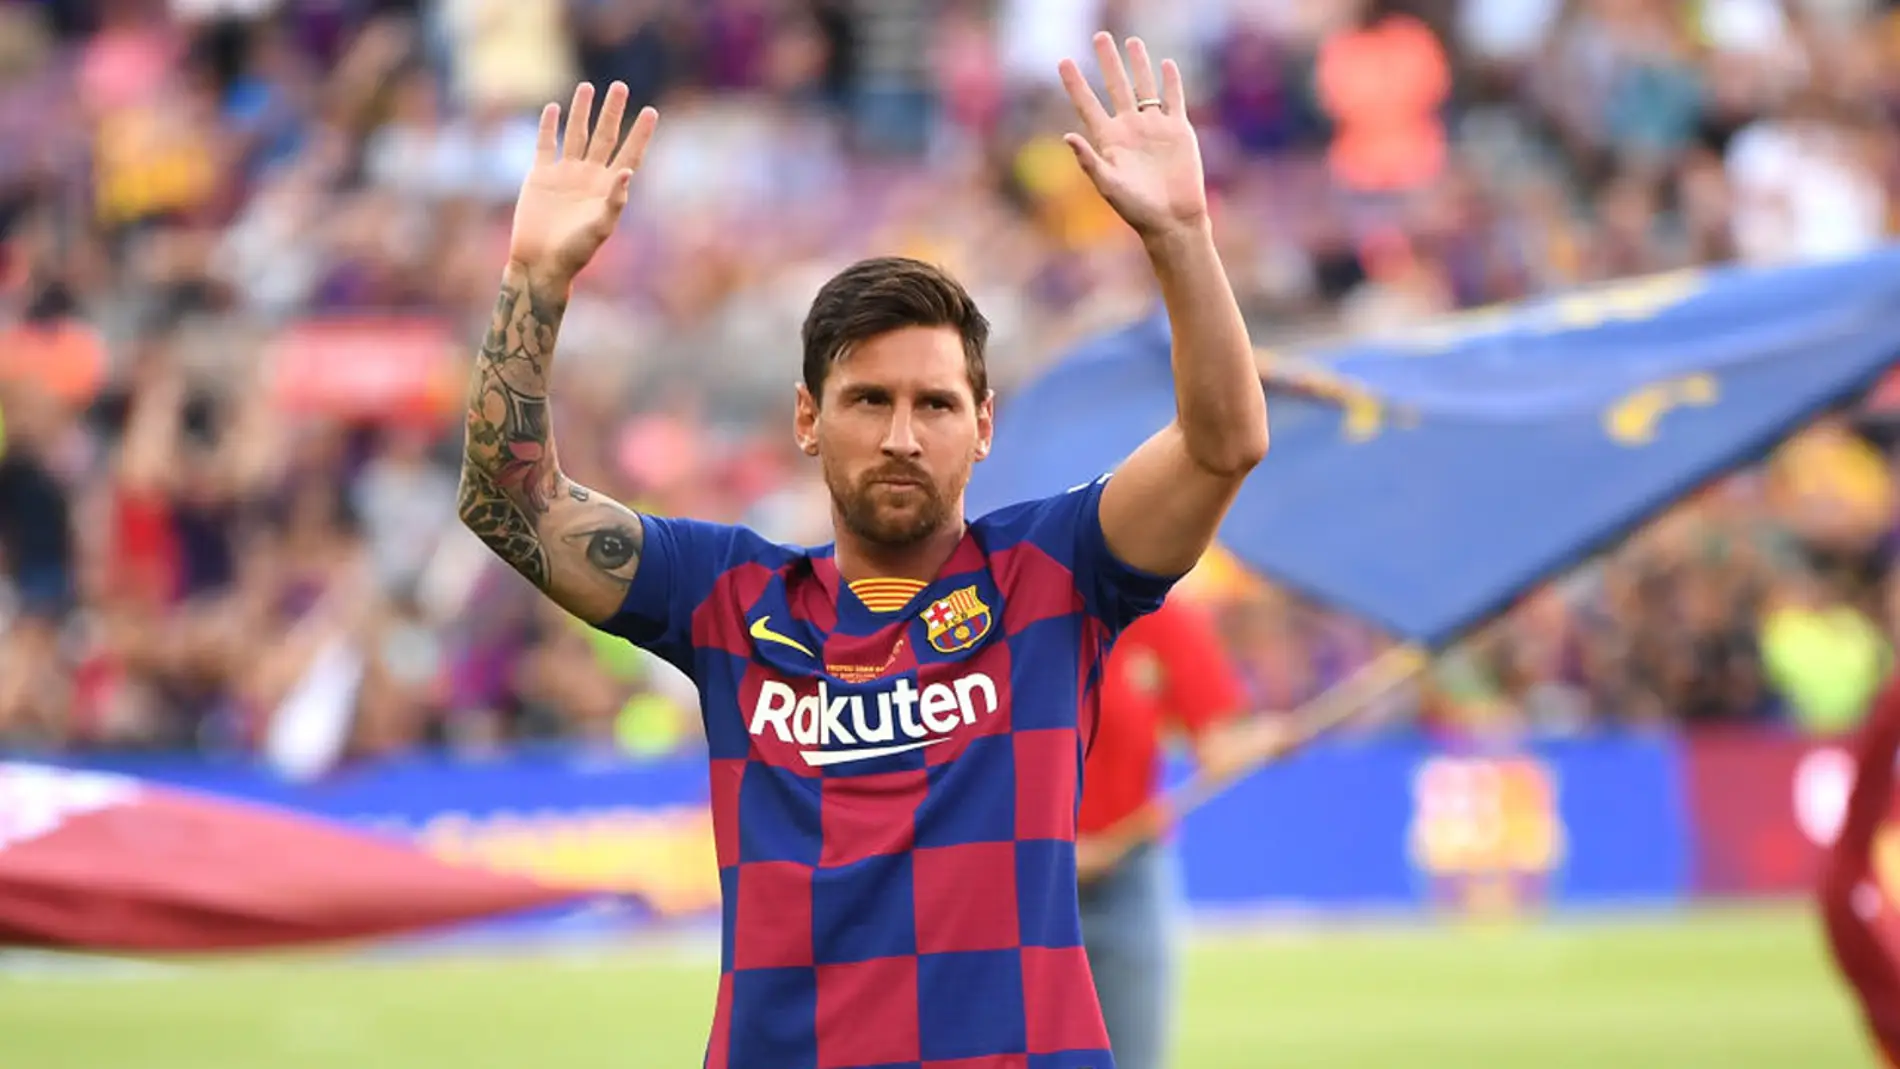 Jugones (06-09-19) "Sudores fríos" en la directiva del Barcelona por el contrato de Messi